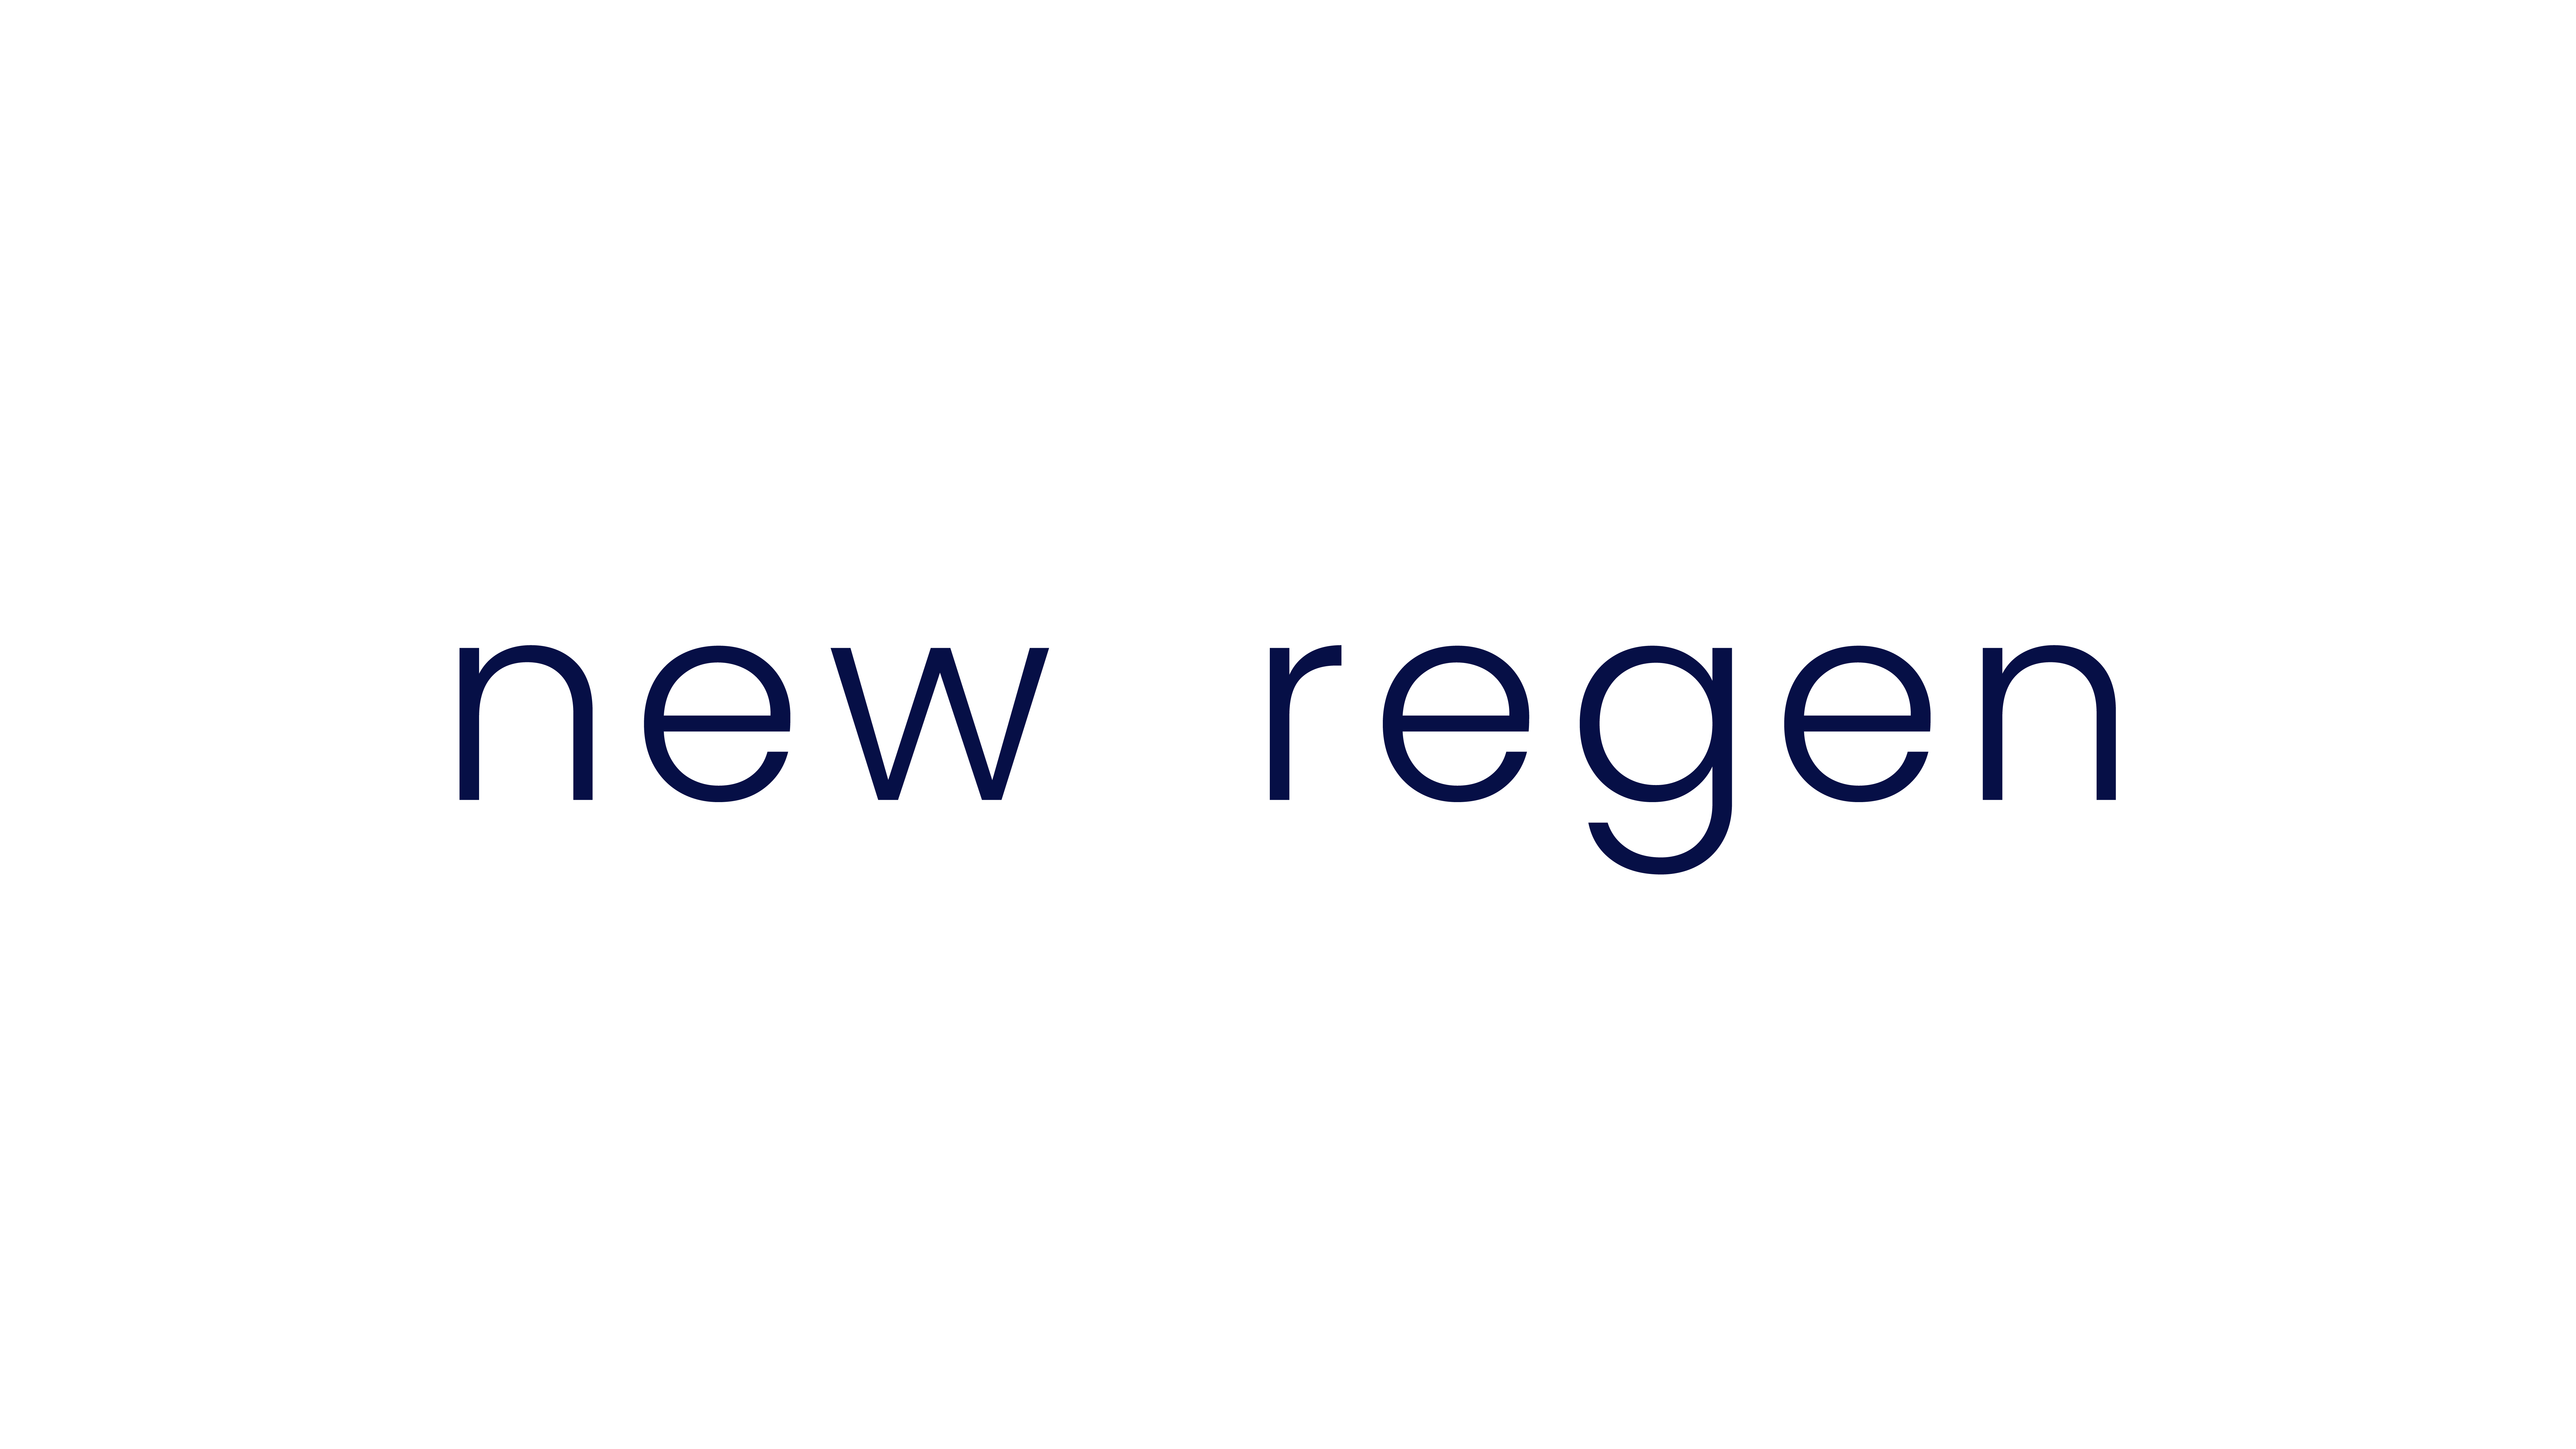 newregen_logo_blue.white.png